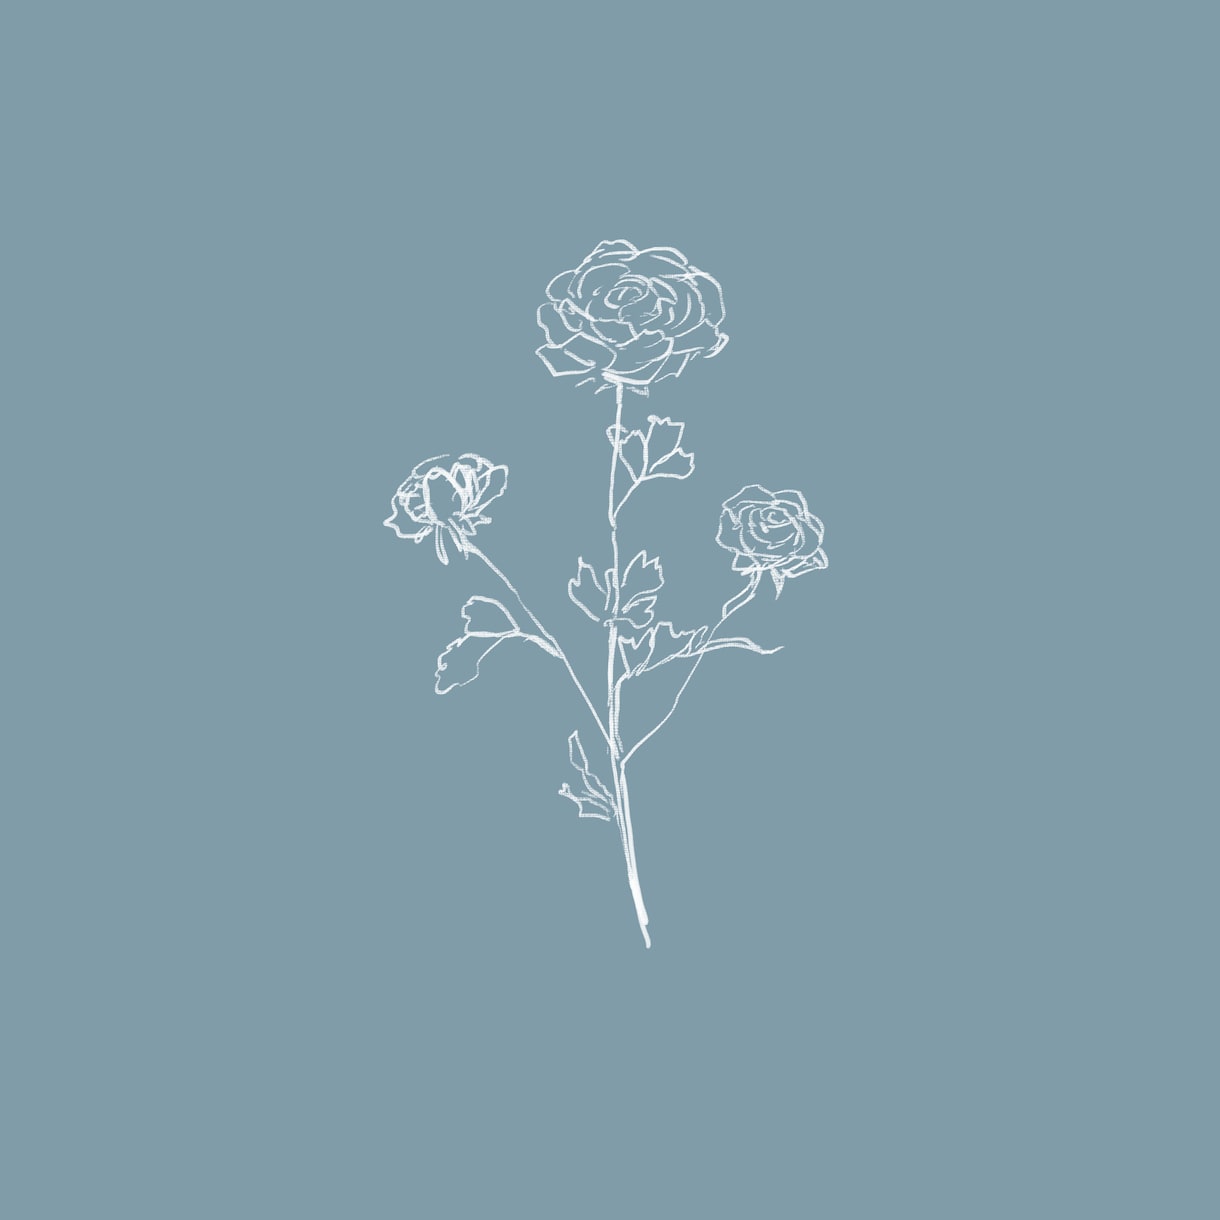 シンプル・おしゃれな花の絵描きます 線画調の花のイラストをお描きします イメージ1